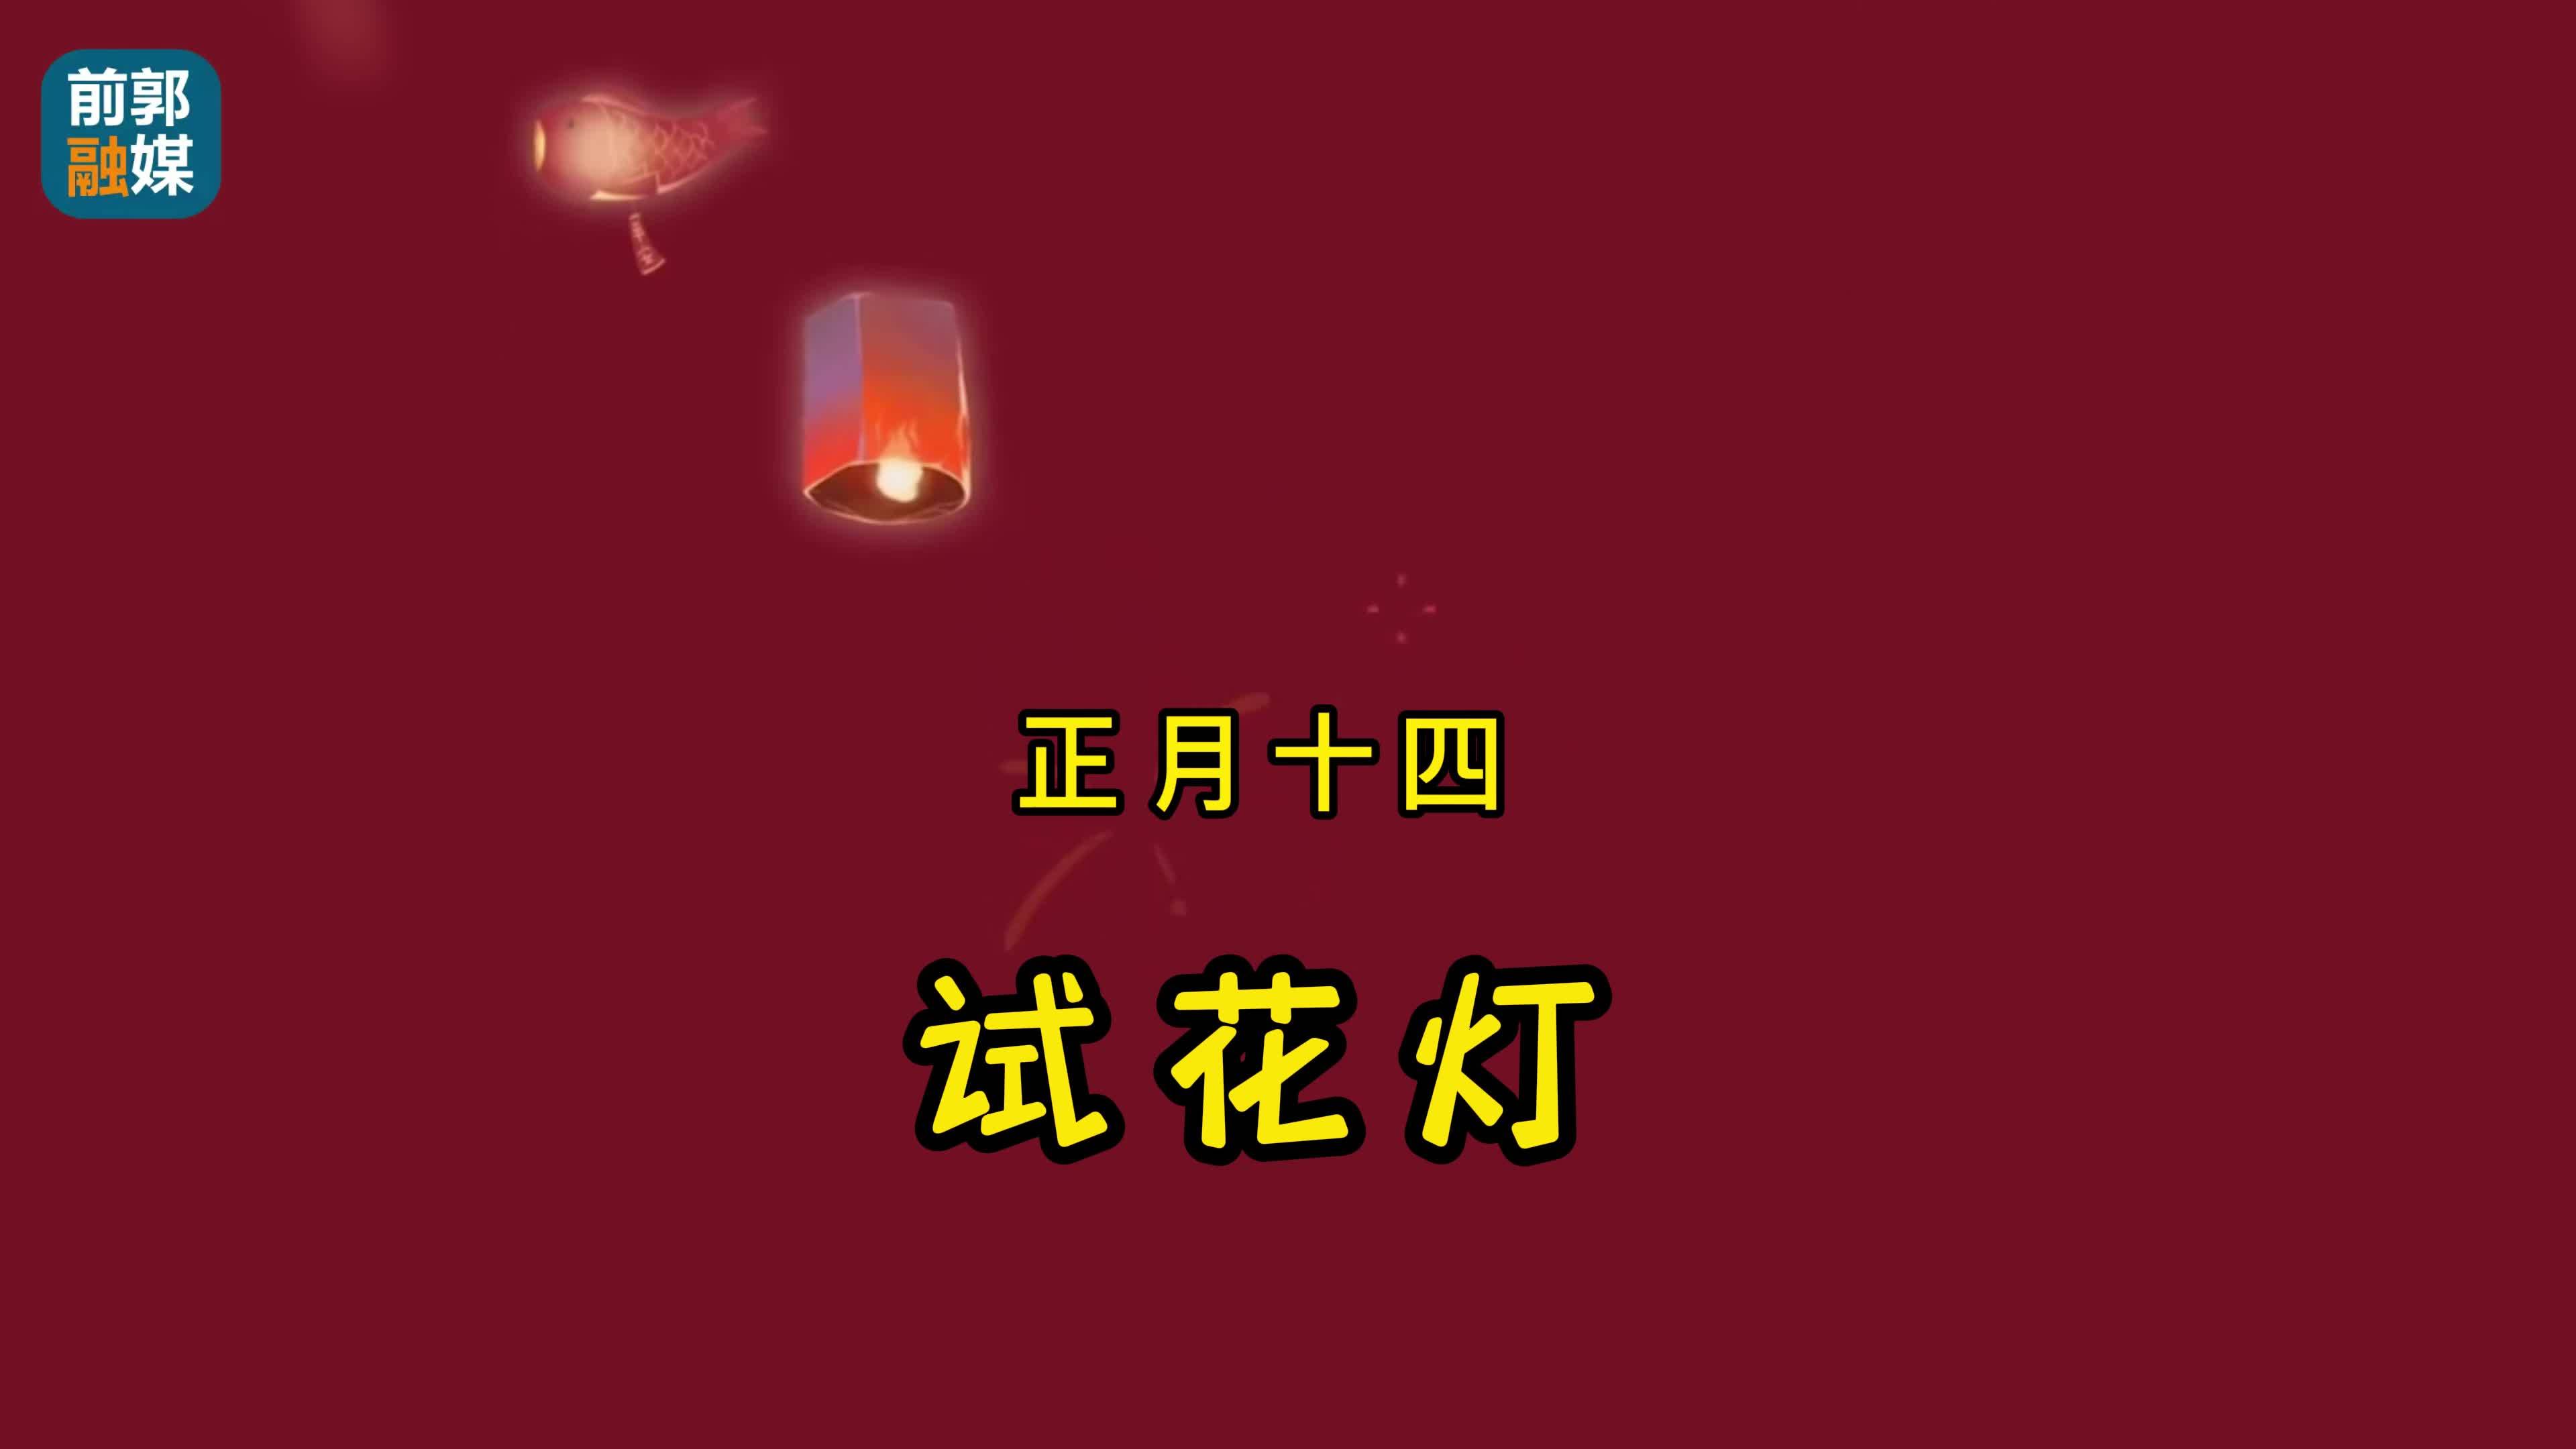 【网络中国节】正月十四“试花灯”